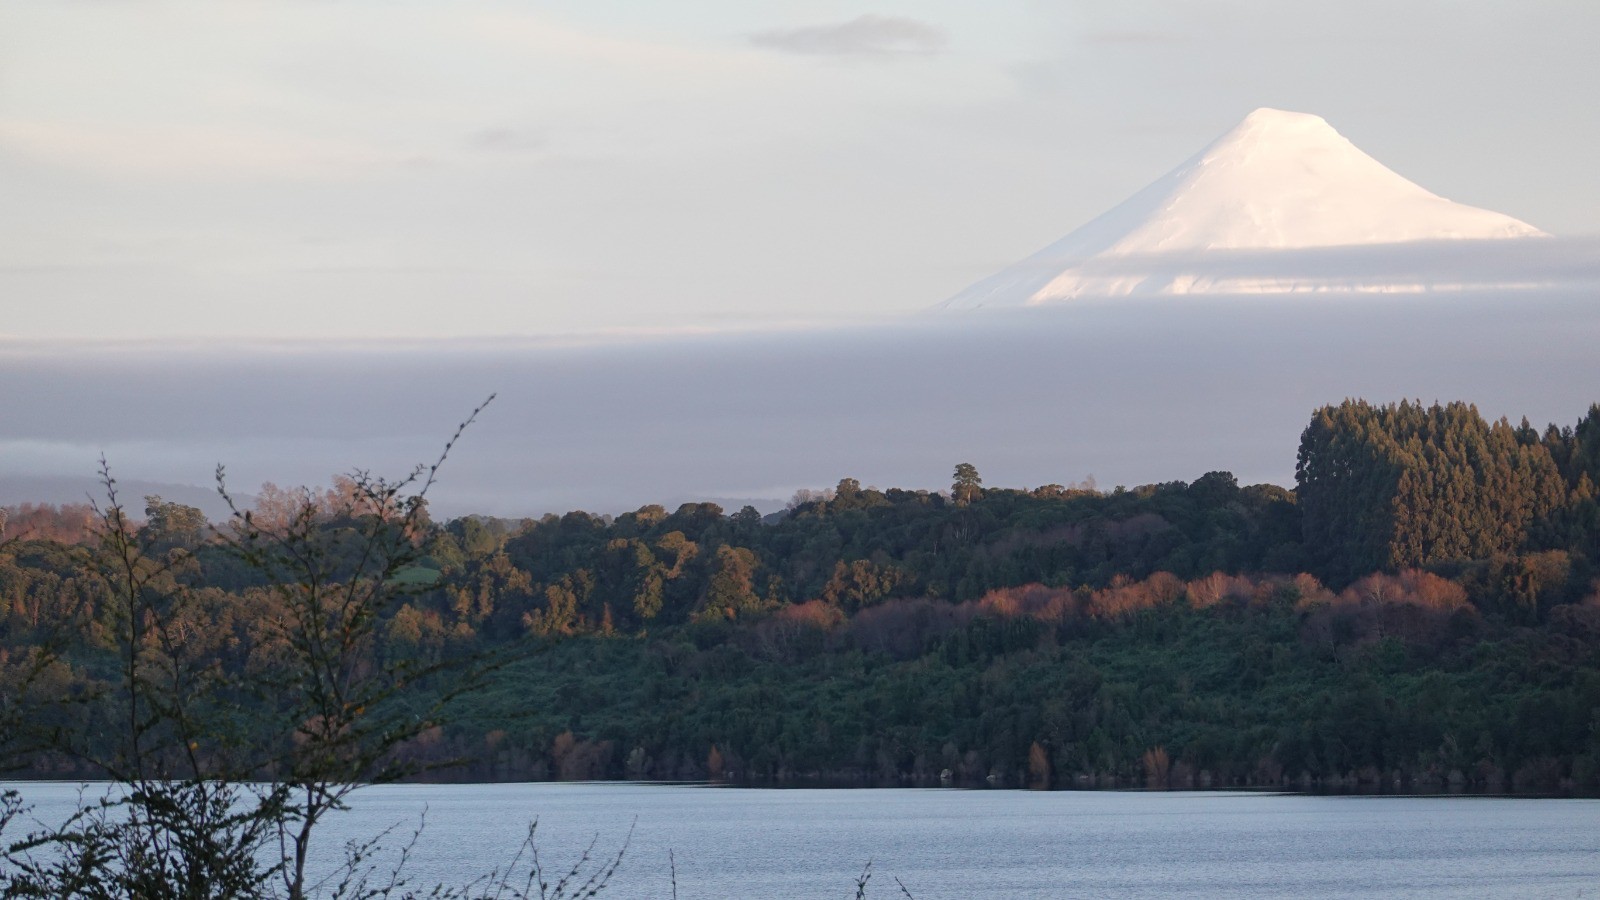 Et le volcan Osorno